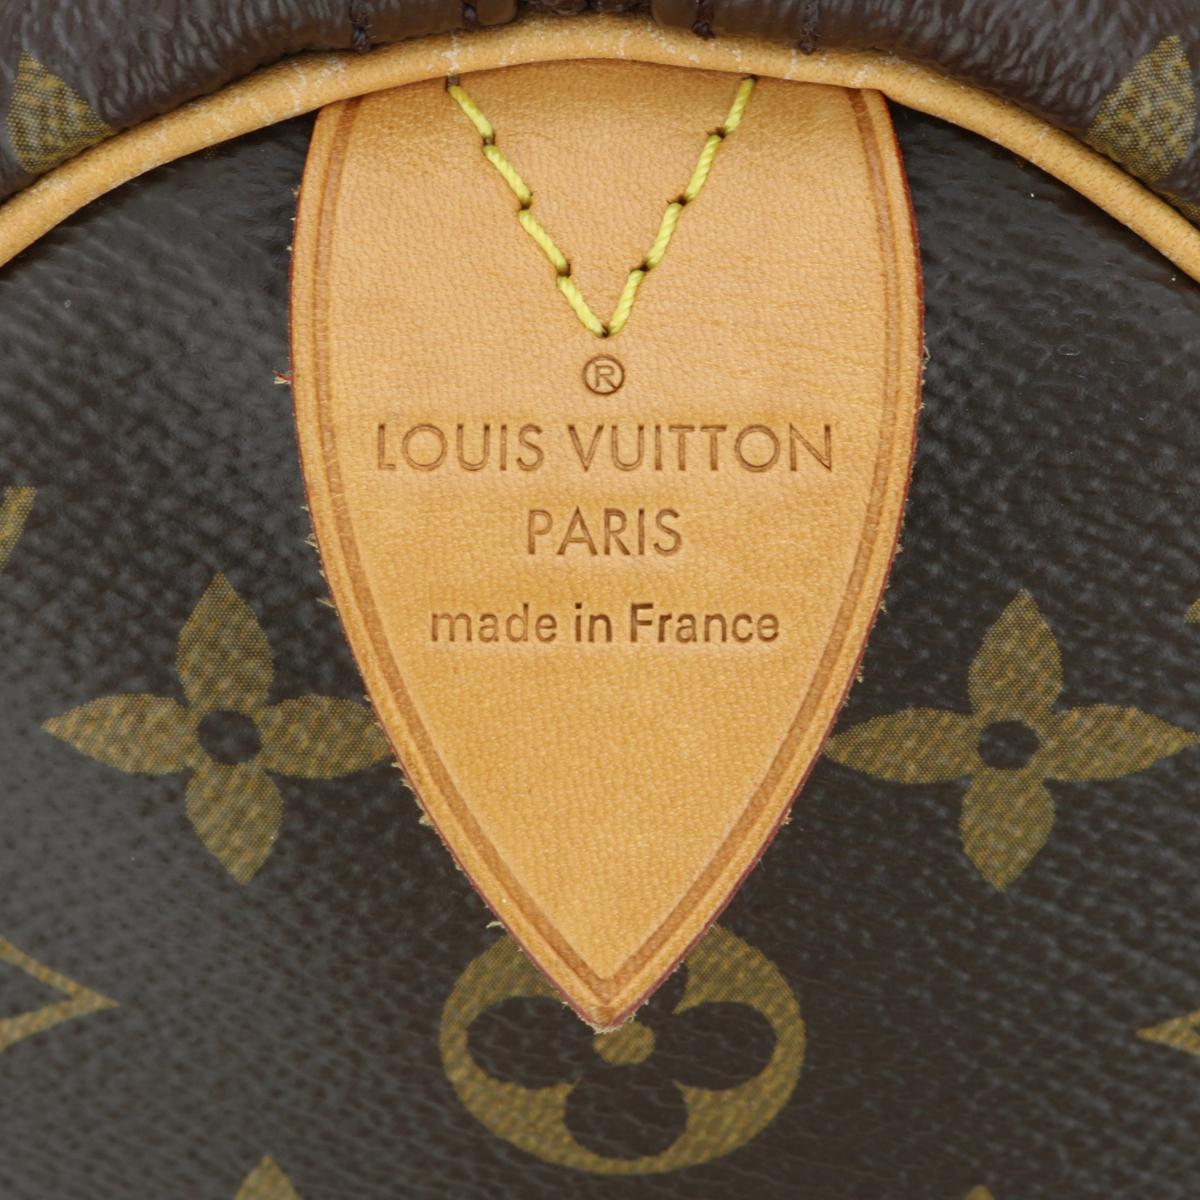 Louis Vuitton Speedy 35 Bag in Monogram 2018 1